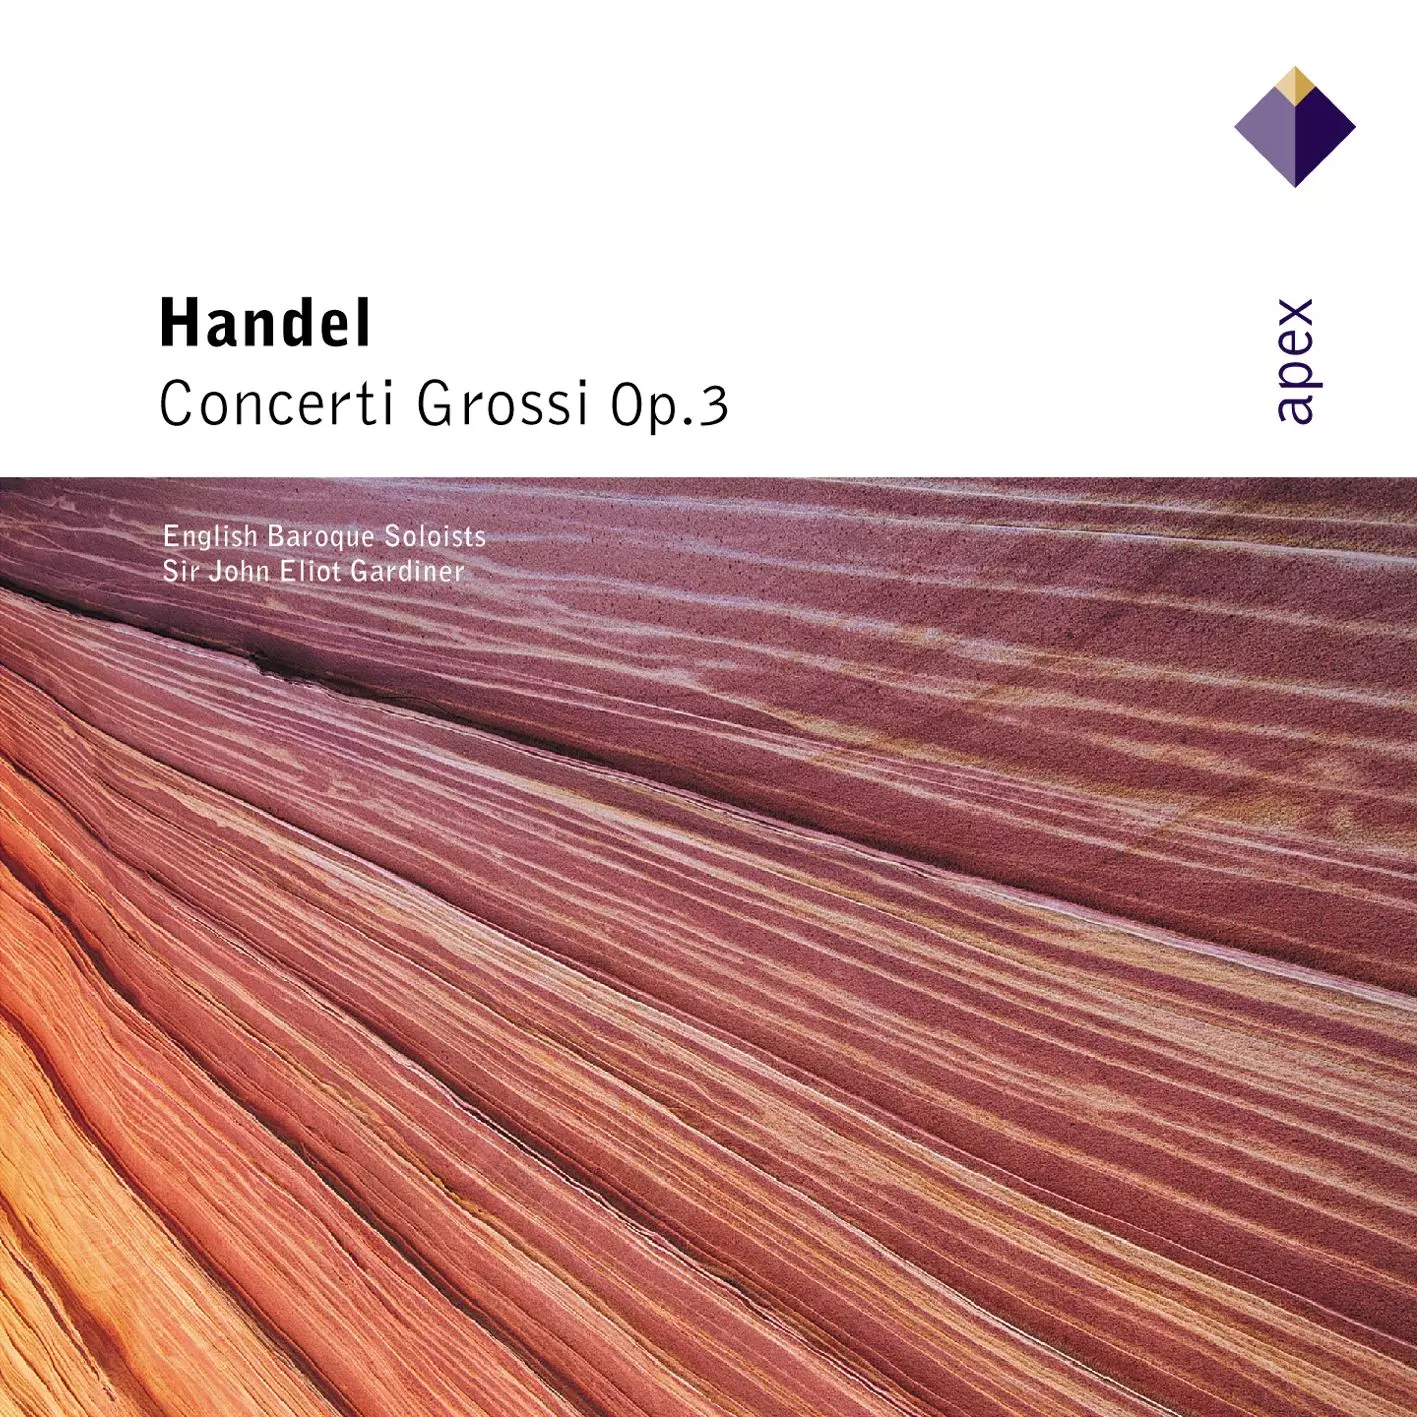 Händel: 6 Concerti grossi Op.3